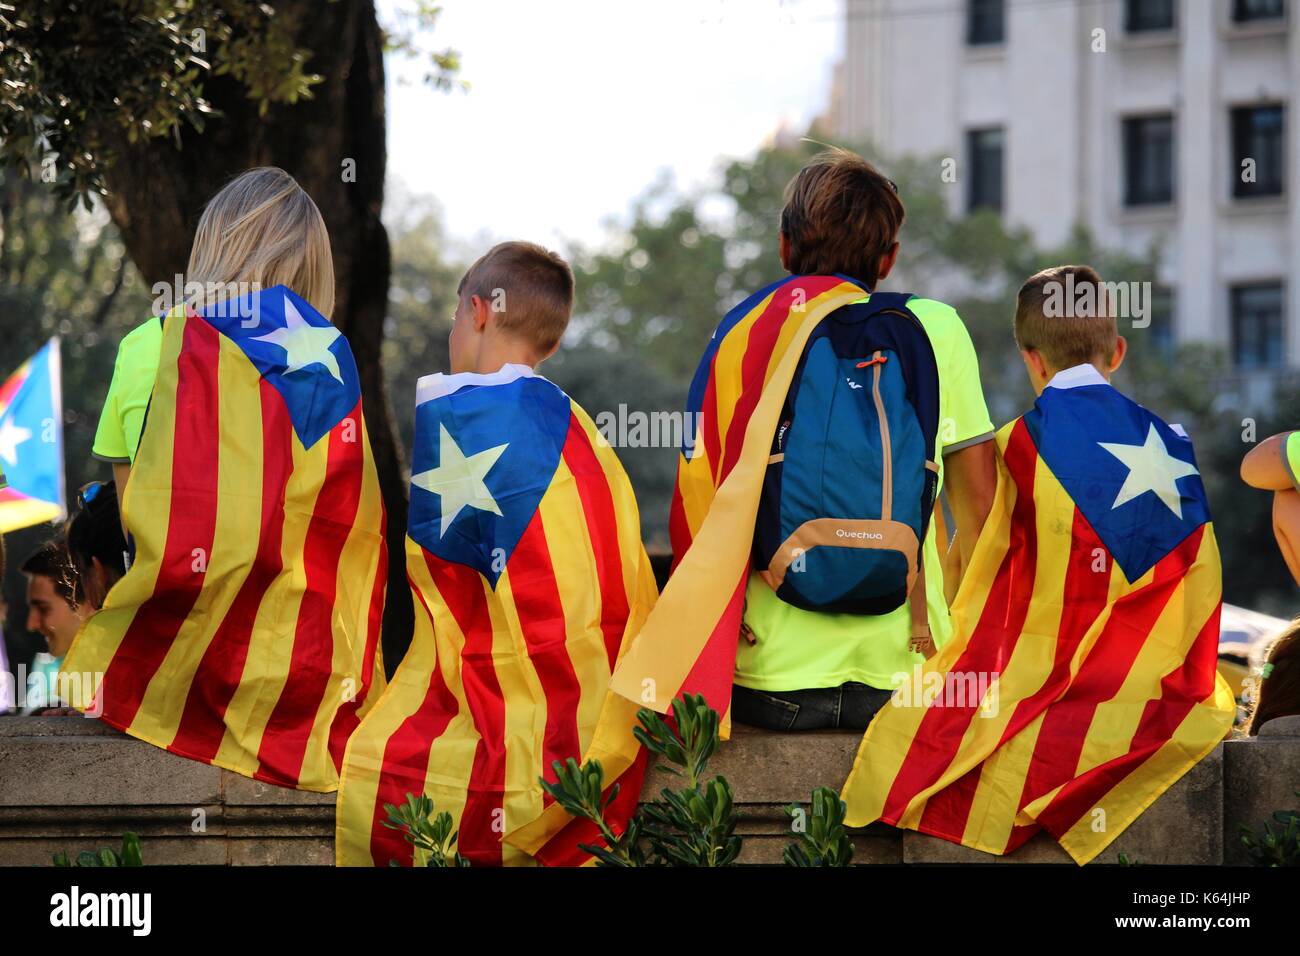 Barcelona, Spanien. 11 Sep, 2017. Teilnehmenden Kinder mit katalanischen städtischer Abgeordneter Symbole an der Iada, der Nationalfeiertag von Katalonien. Die spanische autonome Region zielt darauf ab, ein unabhängigkeitsreferendum am 1. Oktober zu feiern. Quelle: Dino Geromella/Alamy leben Nachrichten Stockfoto